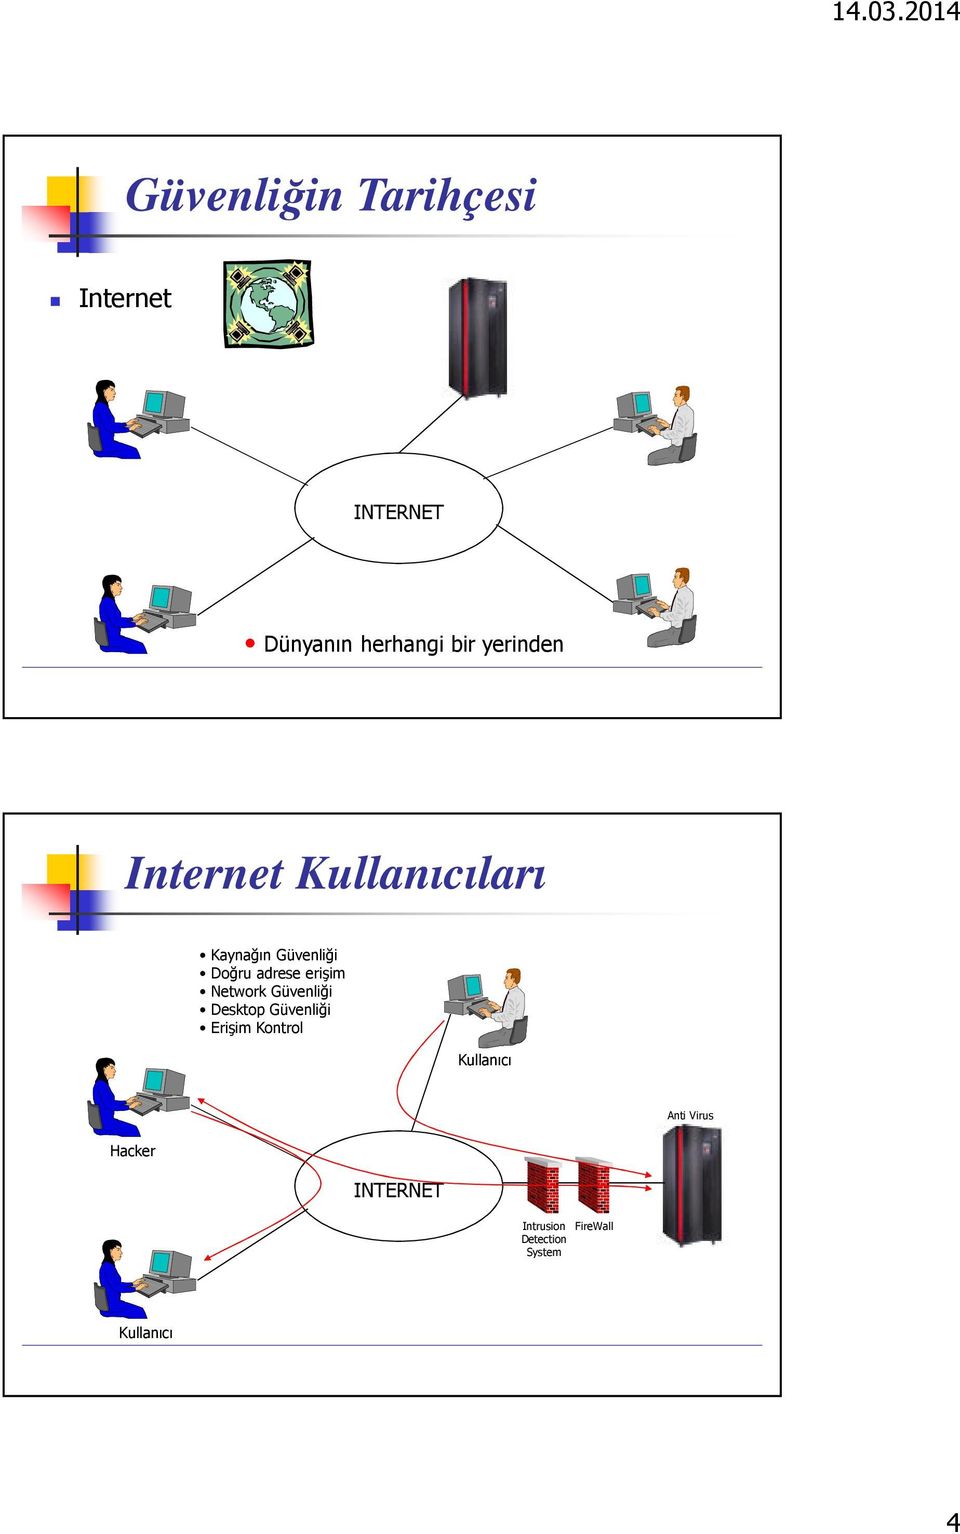 erişim Network Güvenliği Desktop Güvenliği Erişim Kontrol